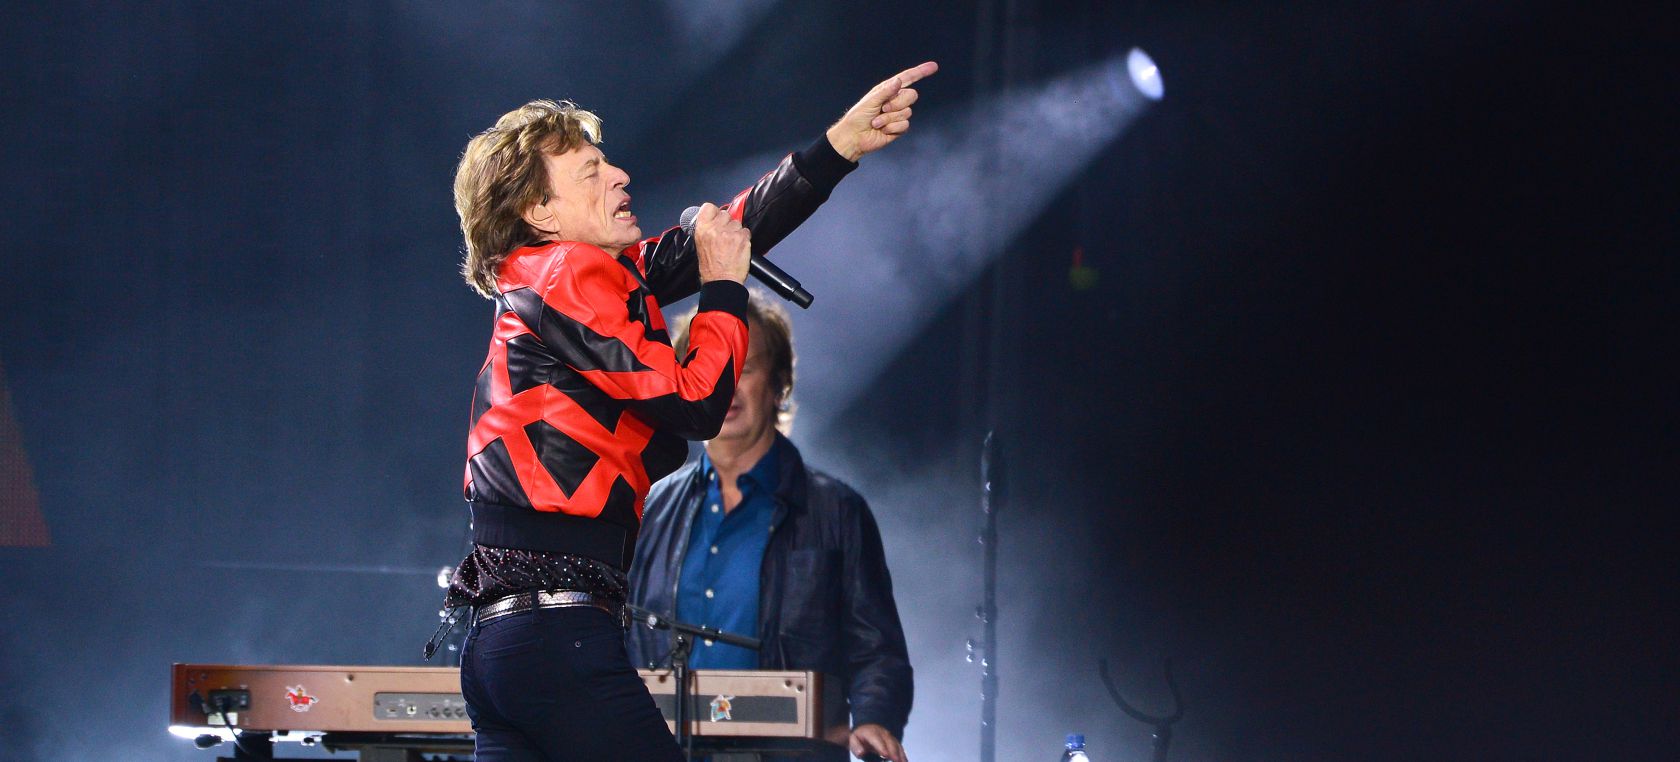 Los Rolling Stones cancelan su próximo concierto por el positivo en covid de Mick Jagger